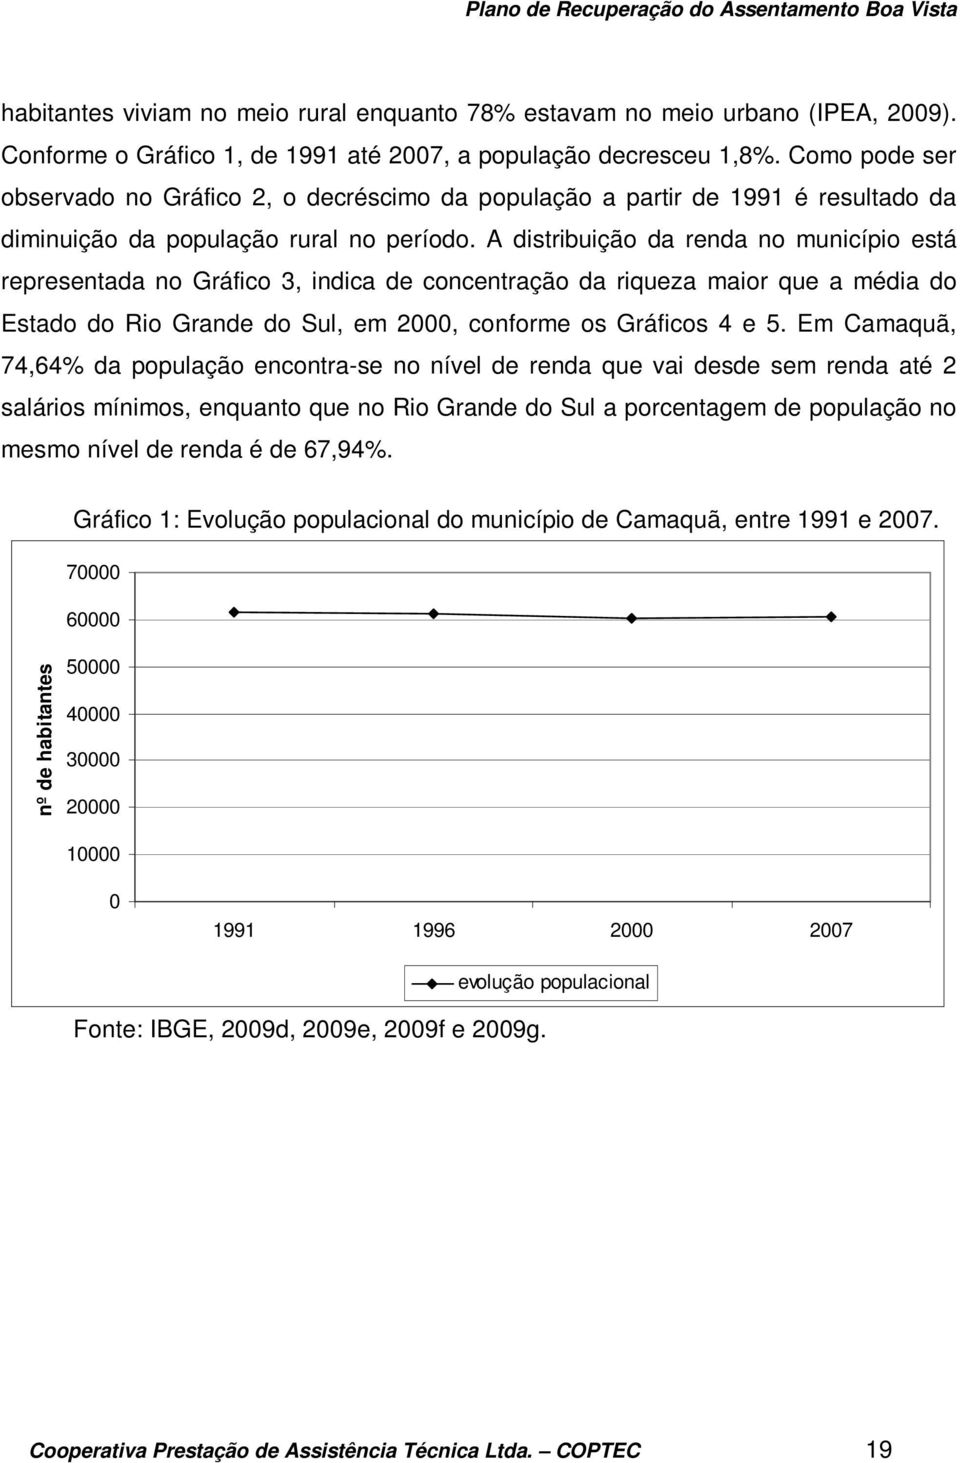 A distribuição da renda no município está representada no Gráfico 3, indica de concentração da riqueza maior que a média do Estado do Rio Grande do Sul, em 2000, conforme os Gráficos 4 e 5.